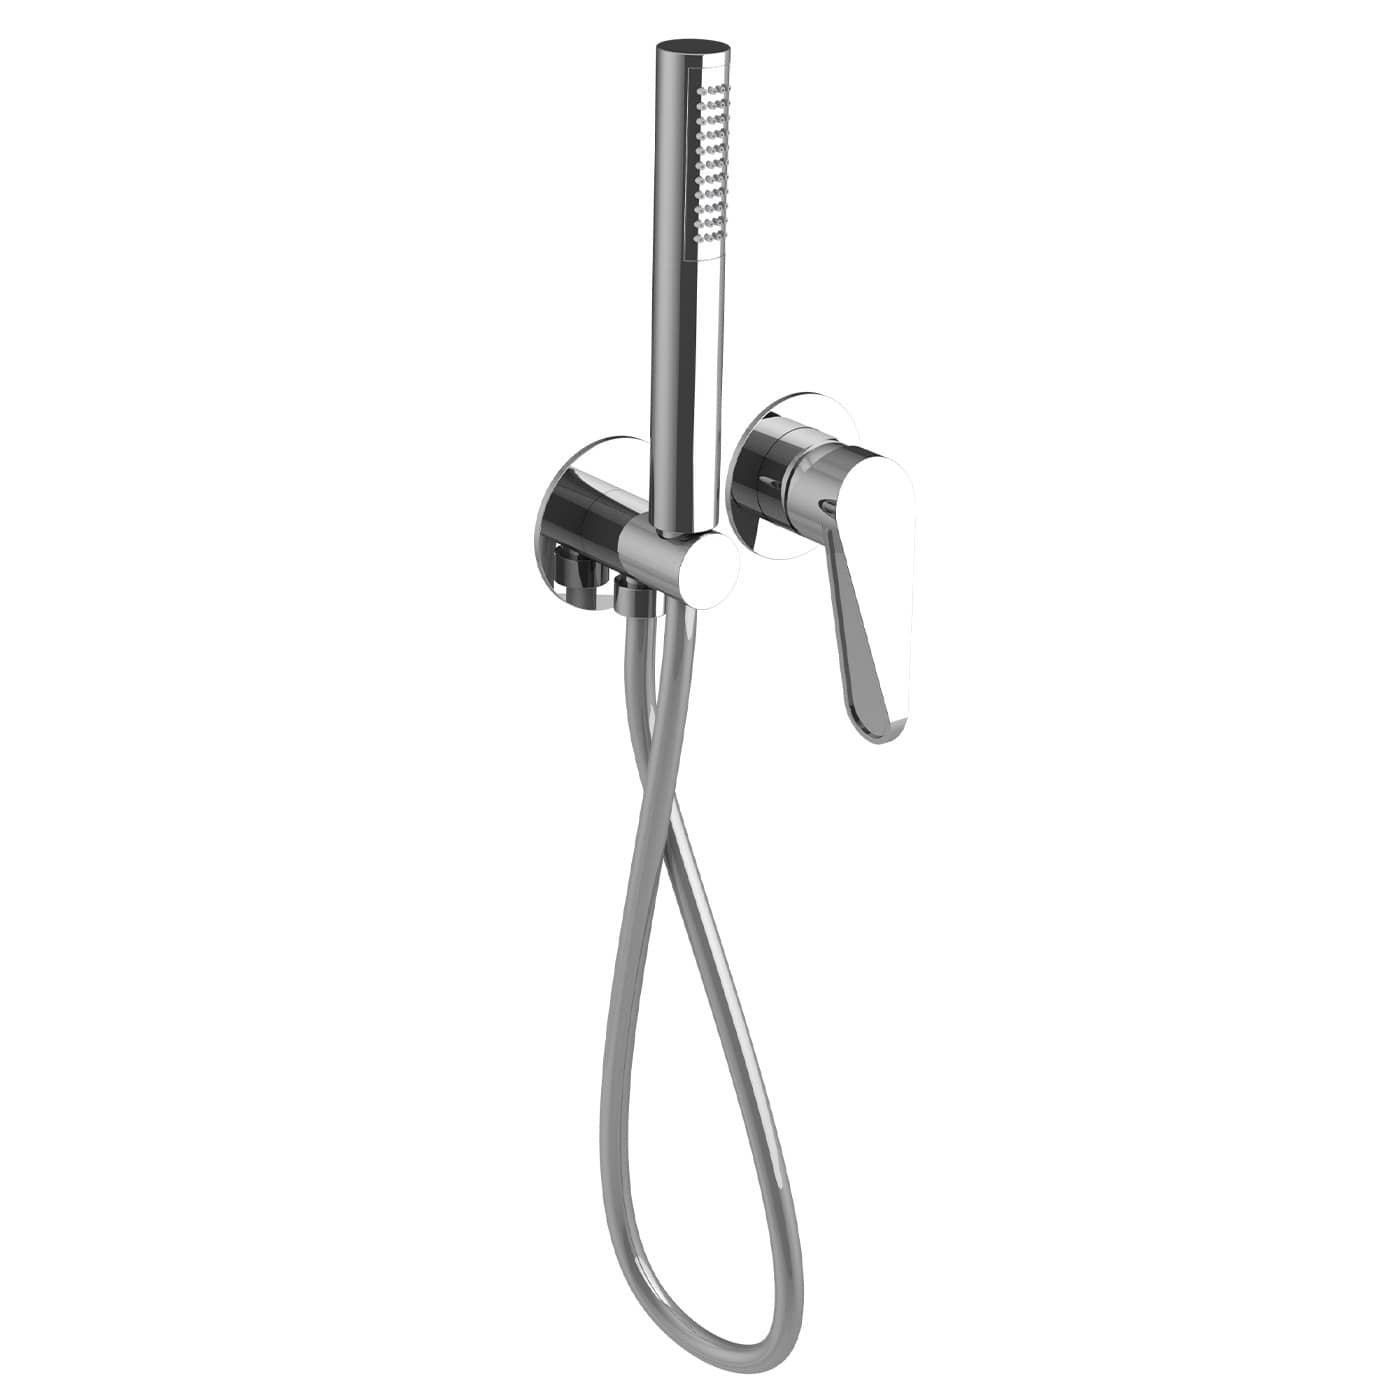 NOED130RO - Parti esterne per monocomando incasso doccia con kit doccia